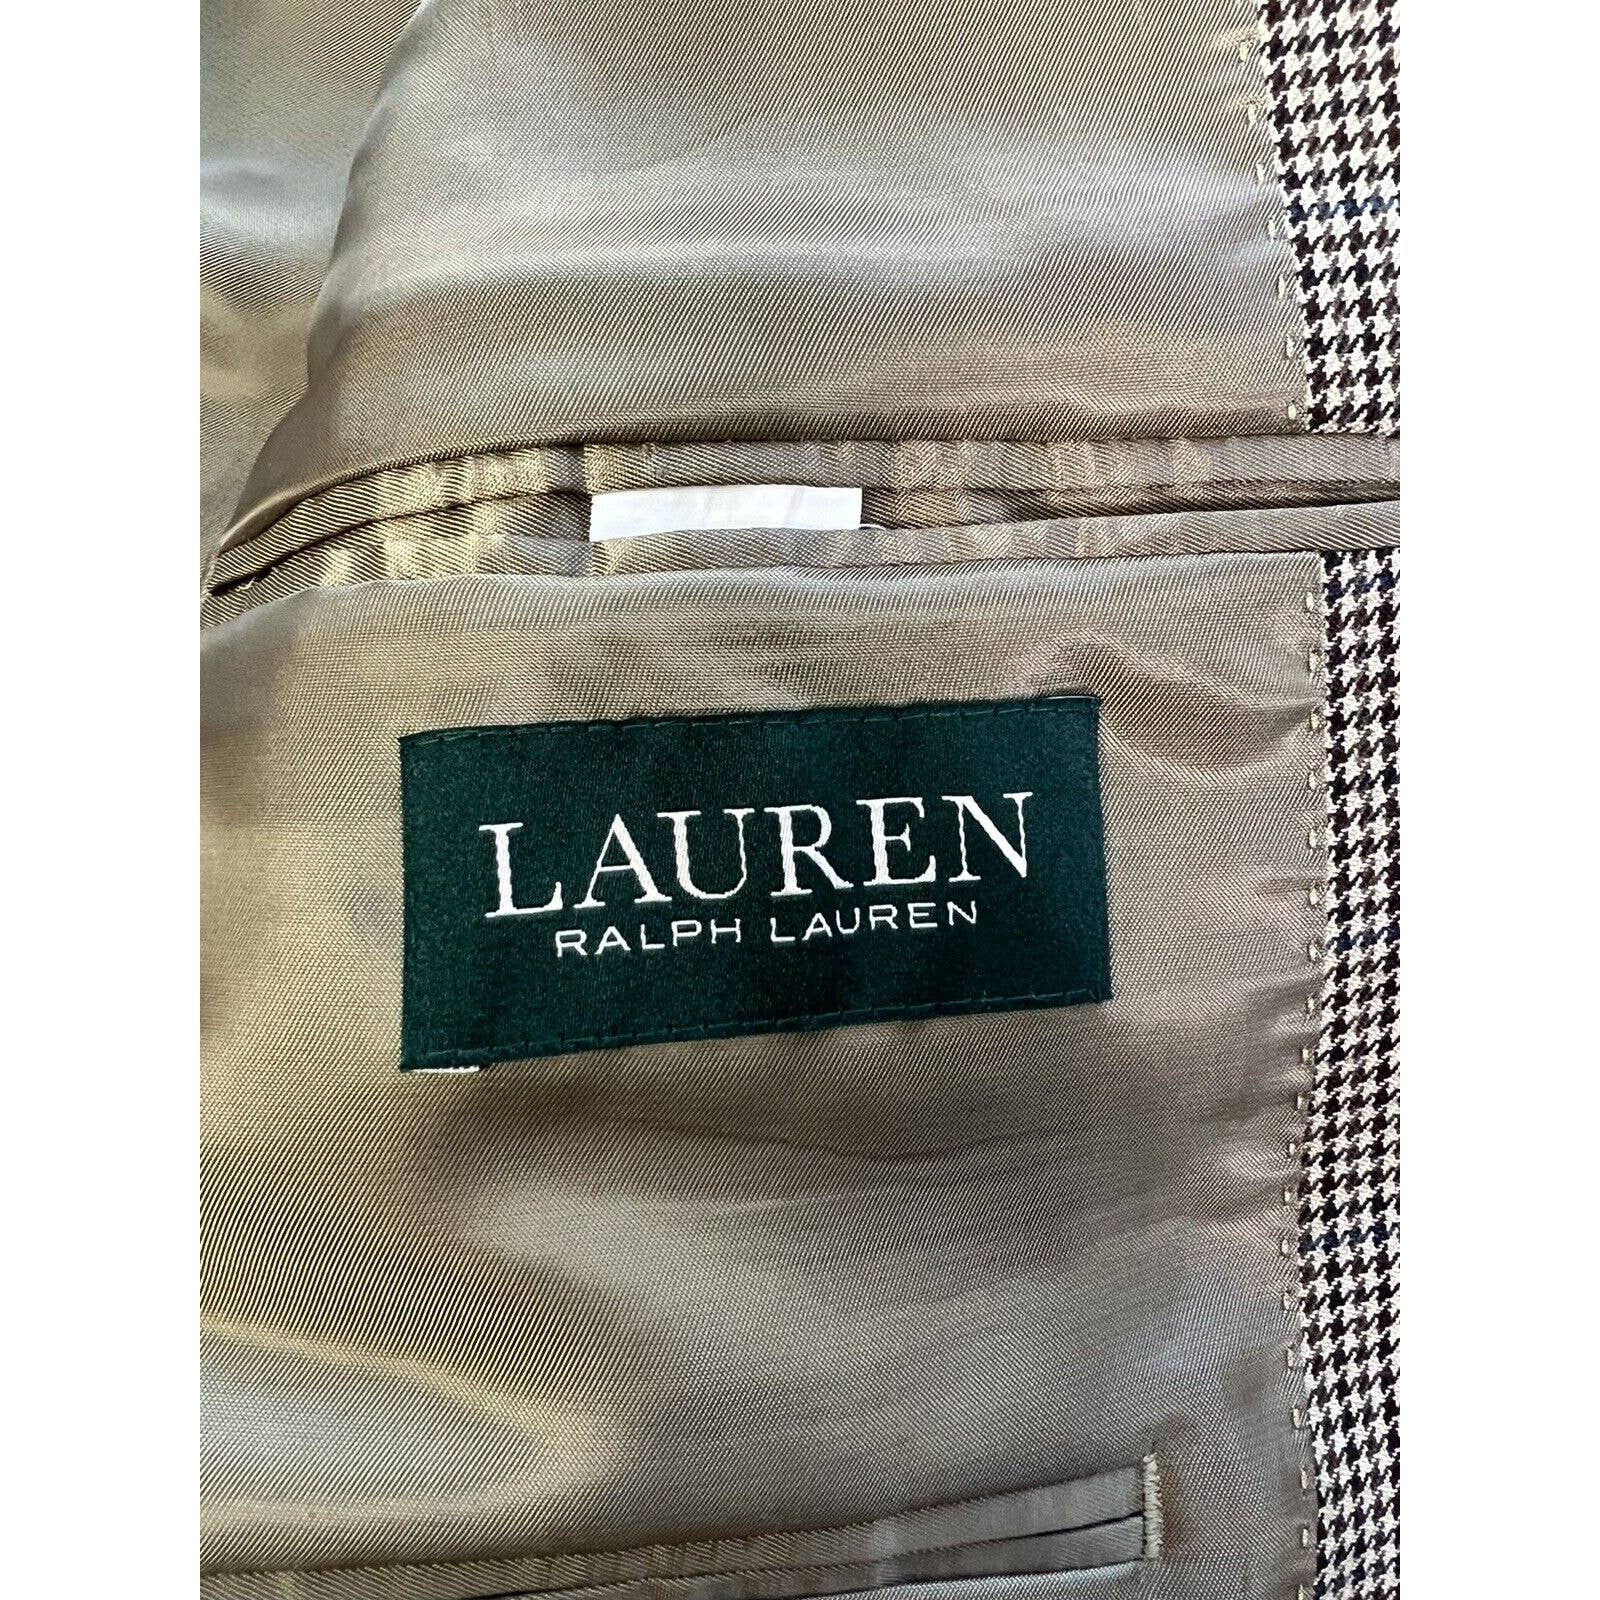 Ralph Lauren 2 Button Sport Coat Men’s 42L Brown Houndstooth Jacket Blazer